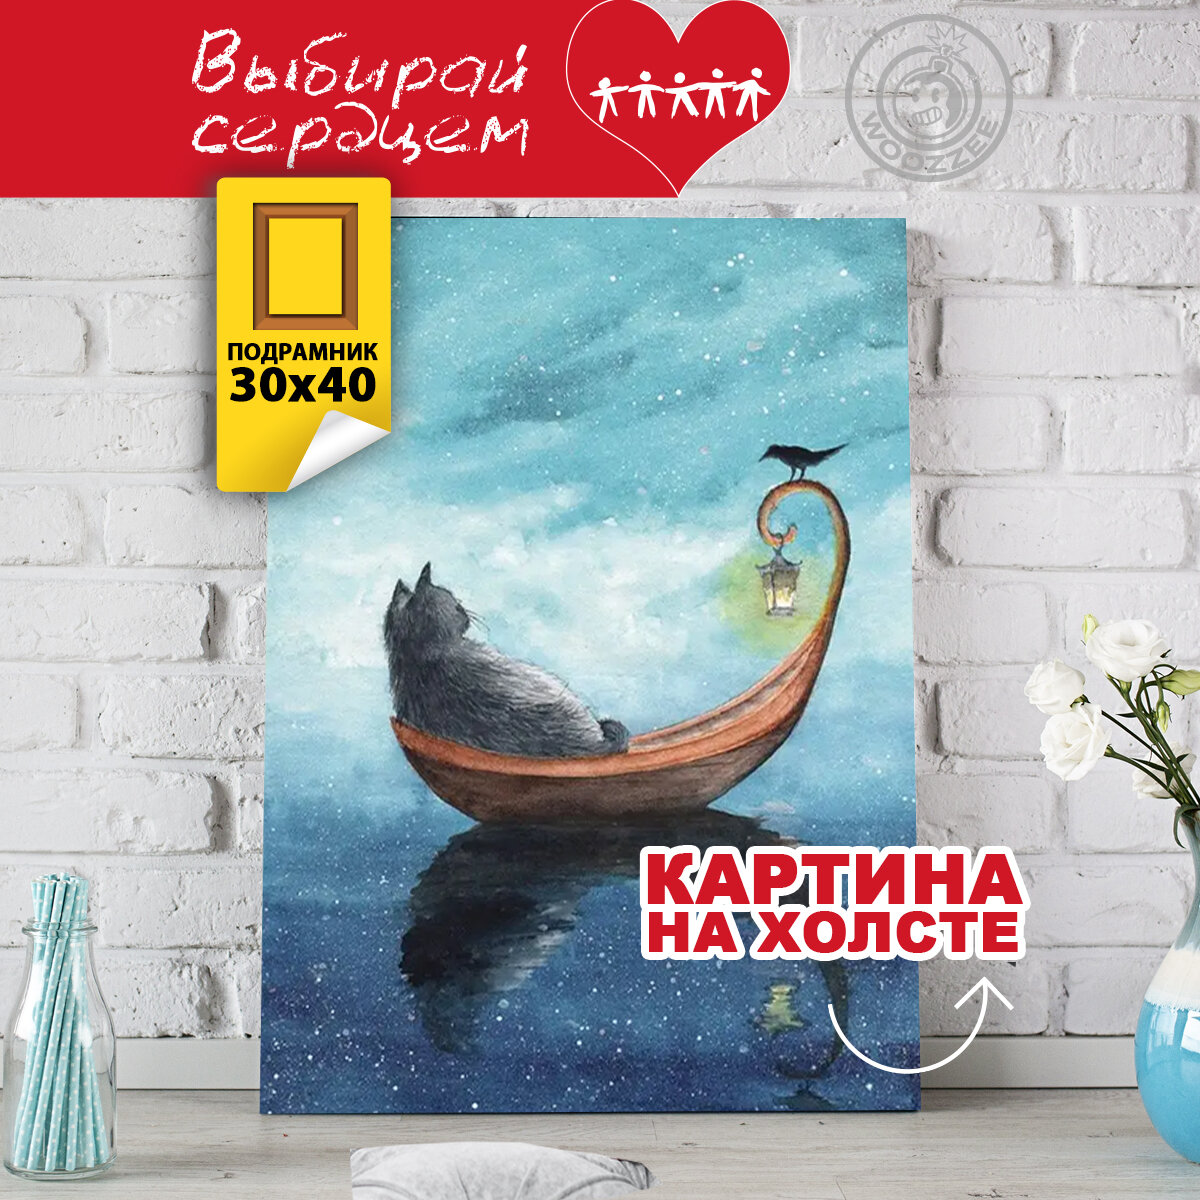 Картина интерьерная Woozzee "Котик в лодке" 40х30 см на виниловом холсте с деревянным подрамником/ картина на холсте / картина на стену